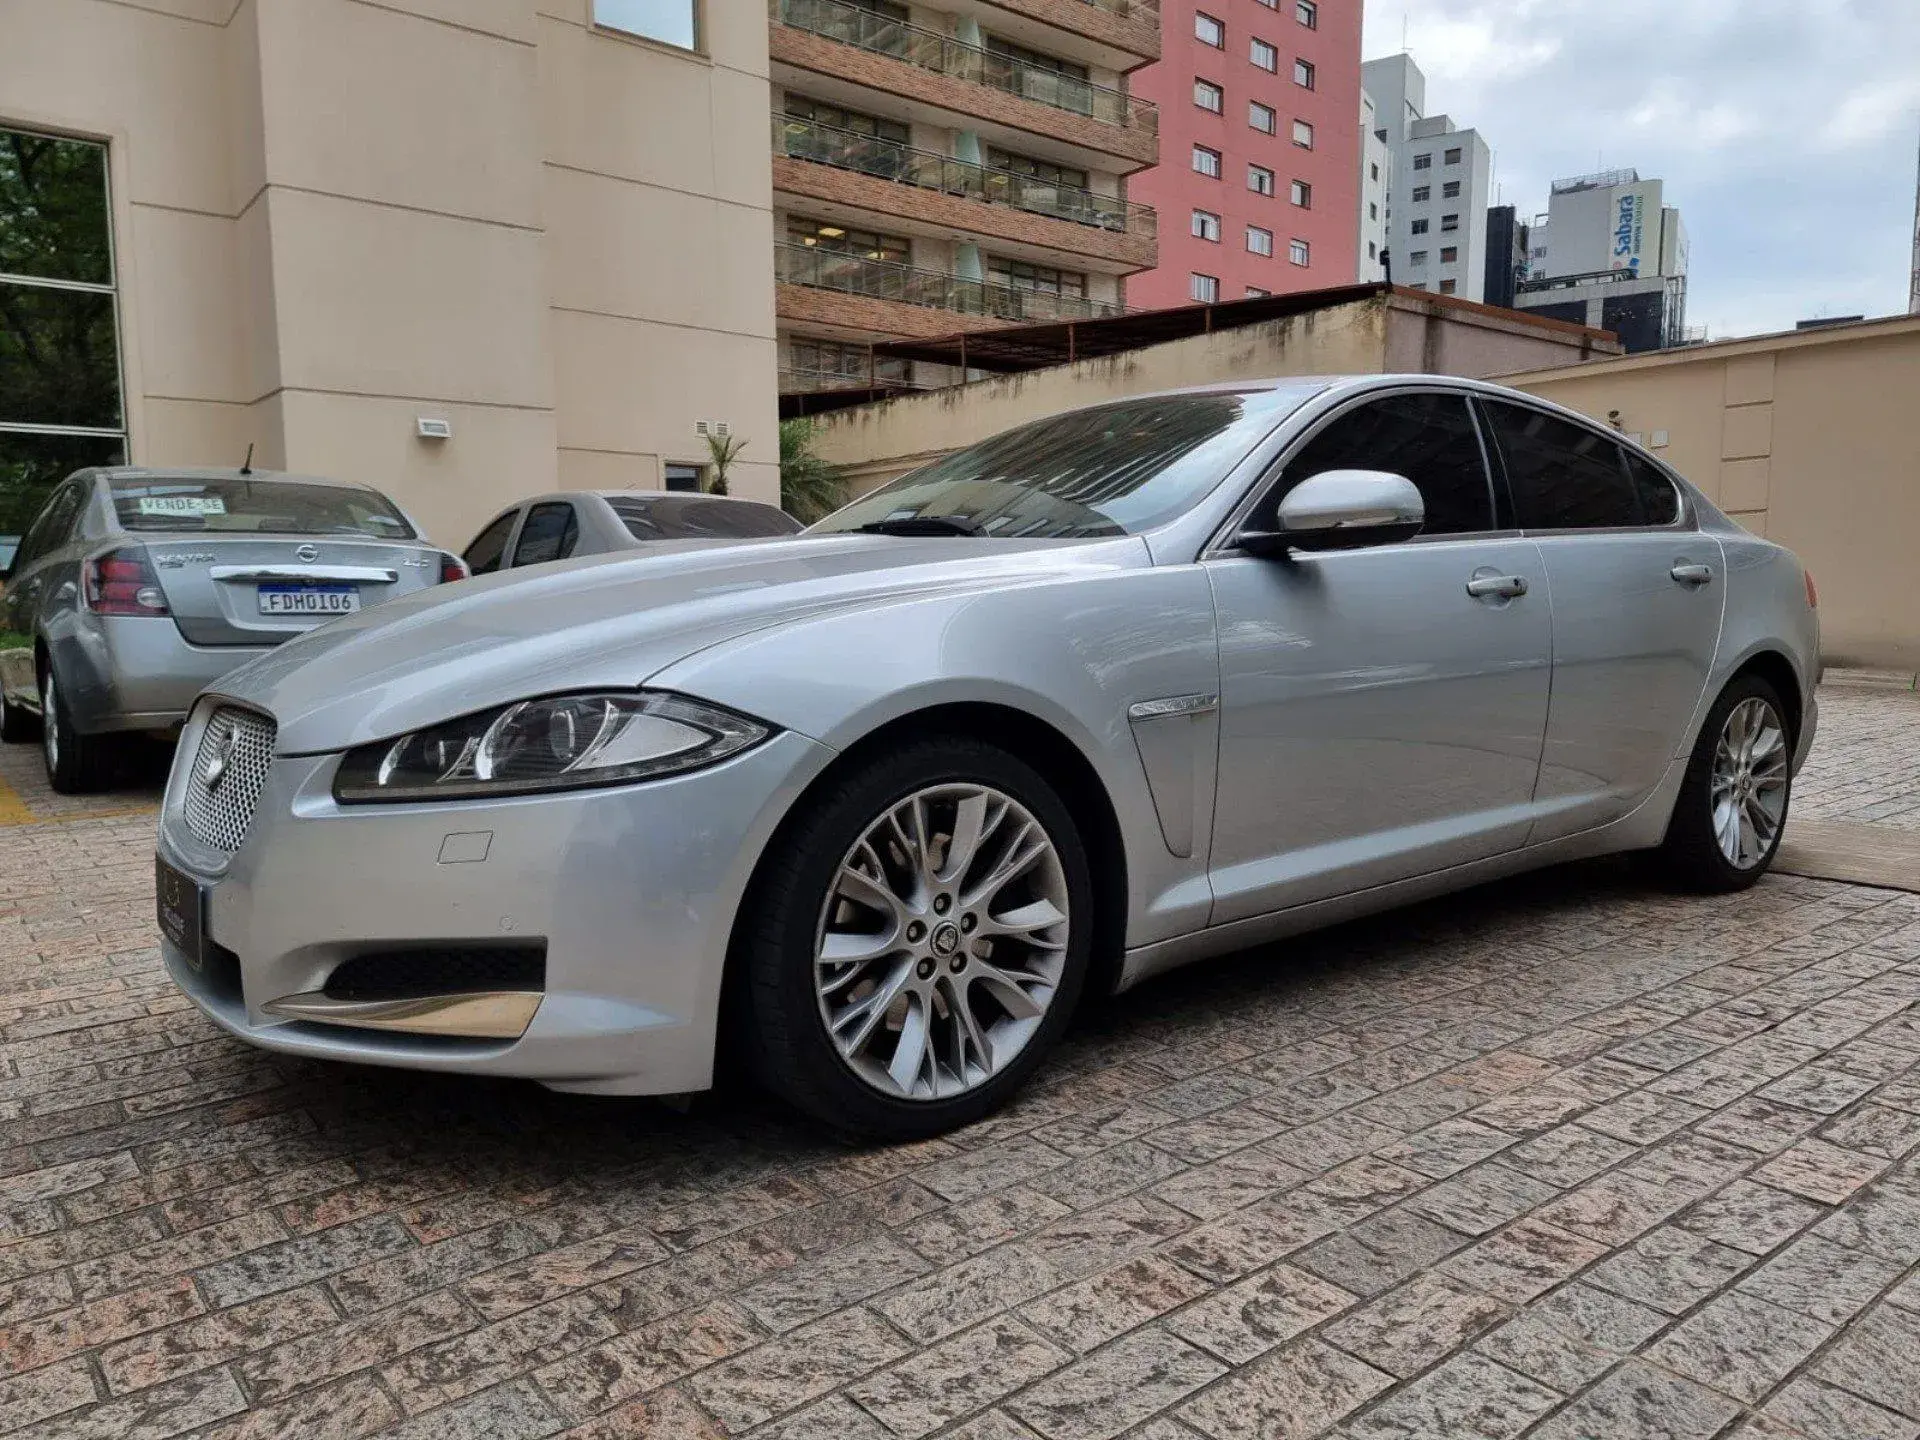 Jaguar Xf 3.0 Premium Luxury V6 24v Gasolina 4p Automatico Wmimagem06352978028